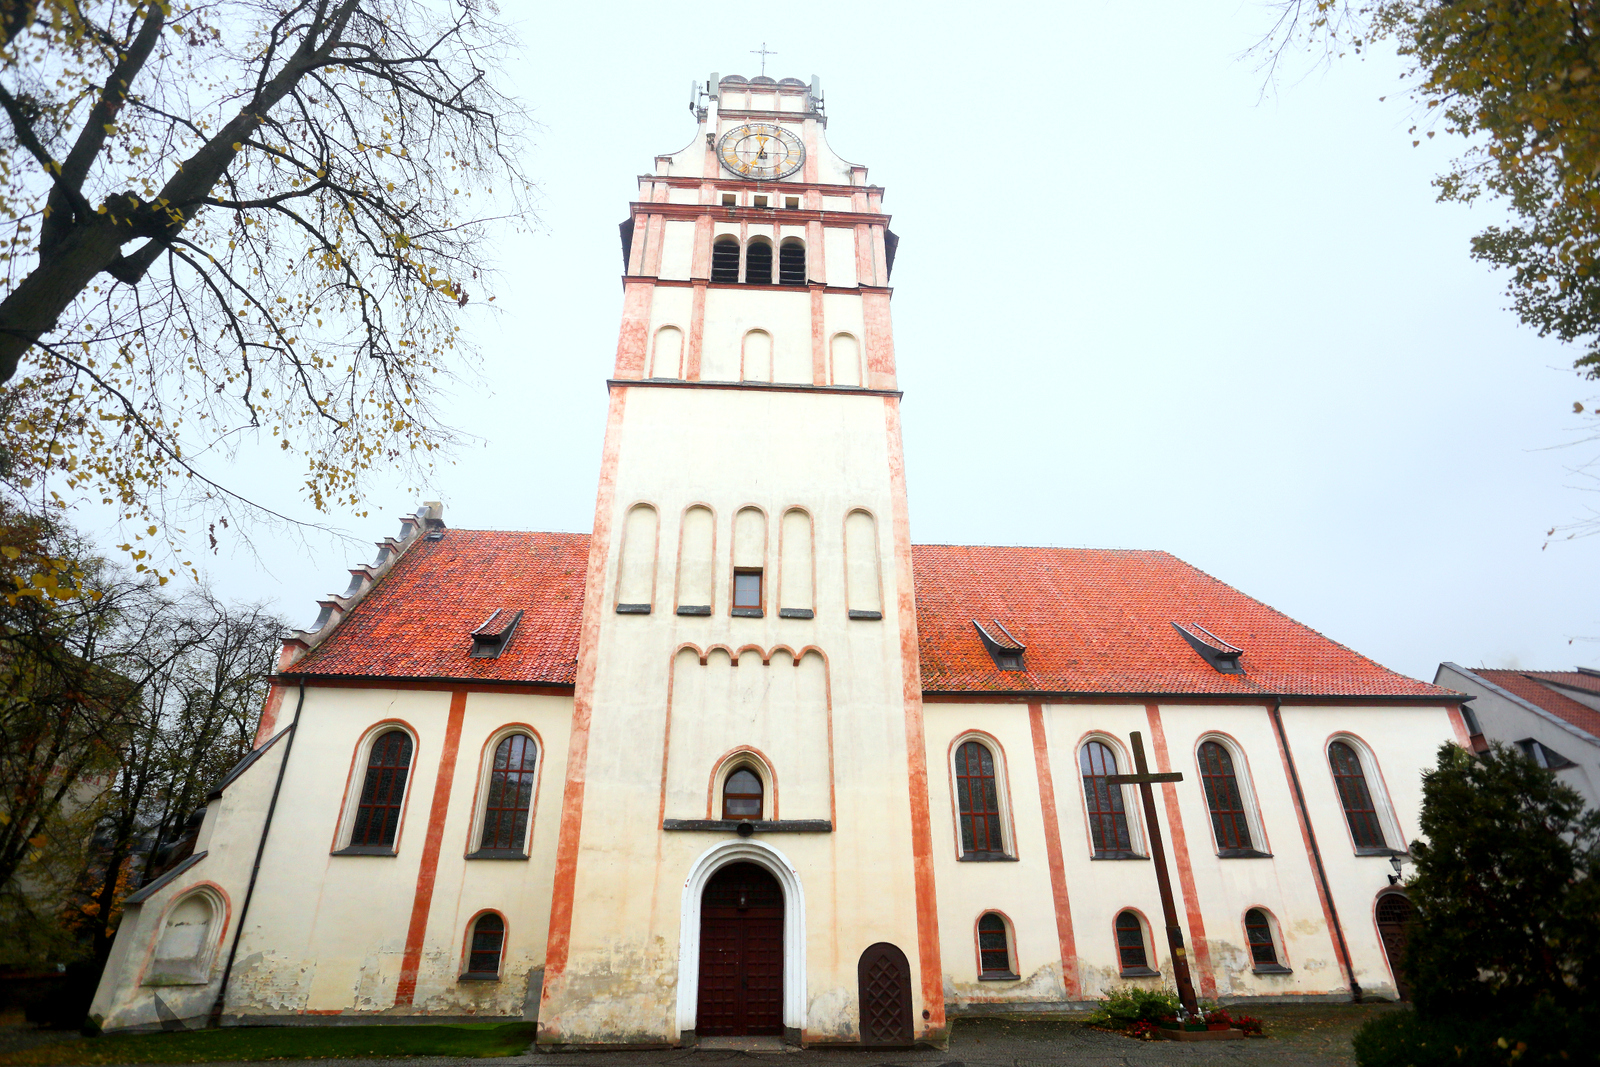 Kościół pw. Niepokalanego Poczęcia Najświętszej Maryi Panny i św. Wojciecha w Nidzicy